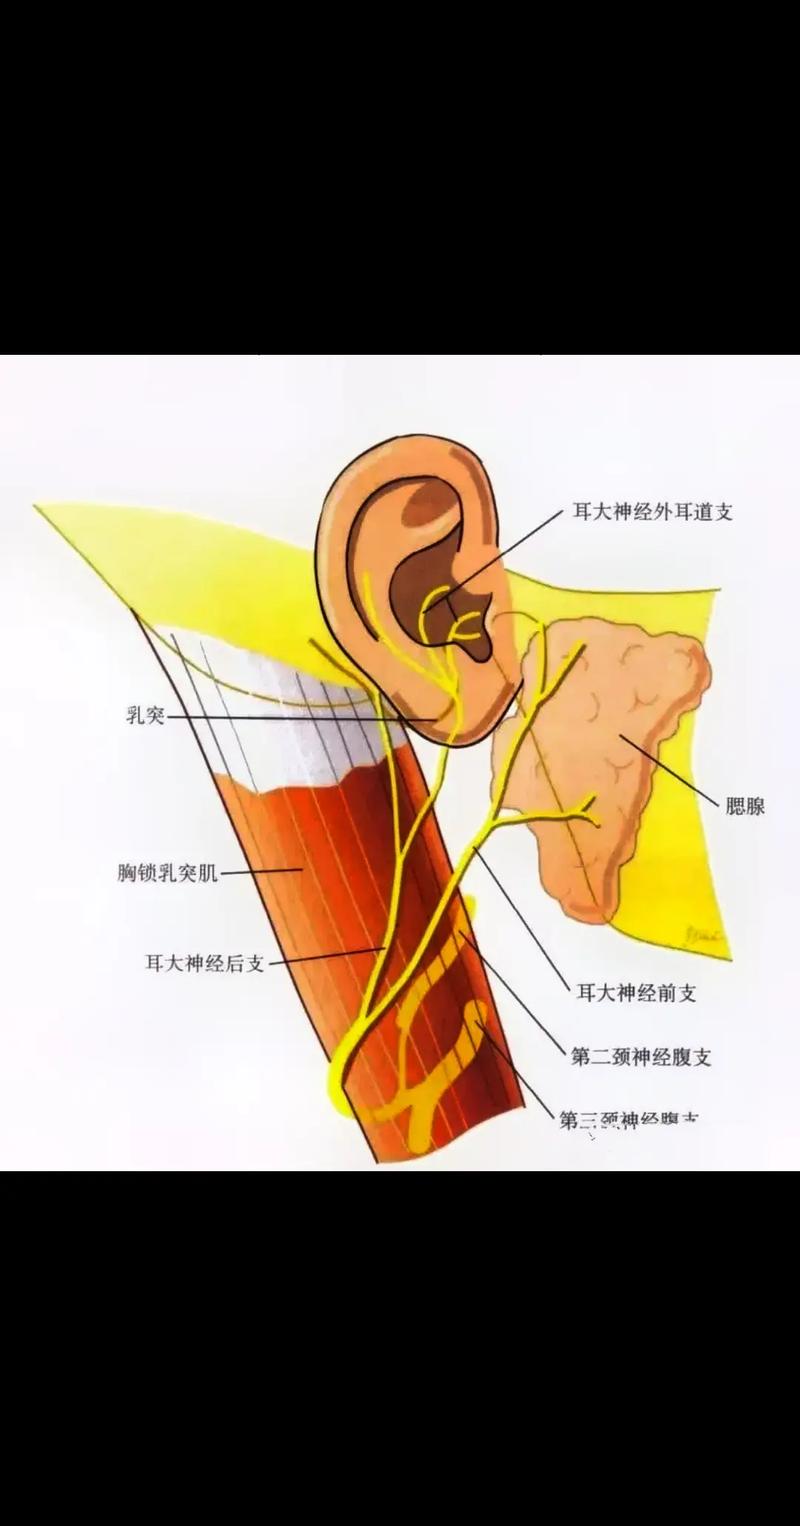 耳朵90抽痛注意耳大神经痛!#耳大神经痛 - 抖音